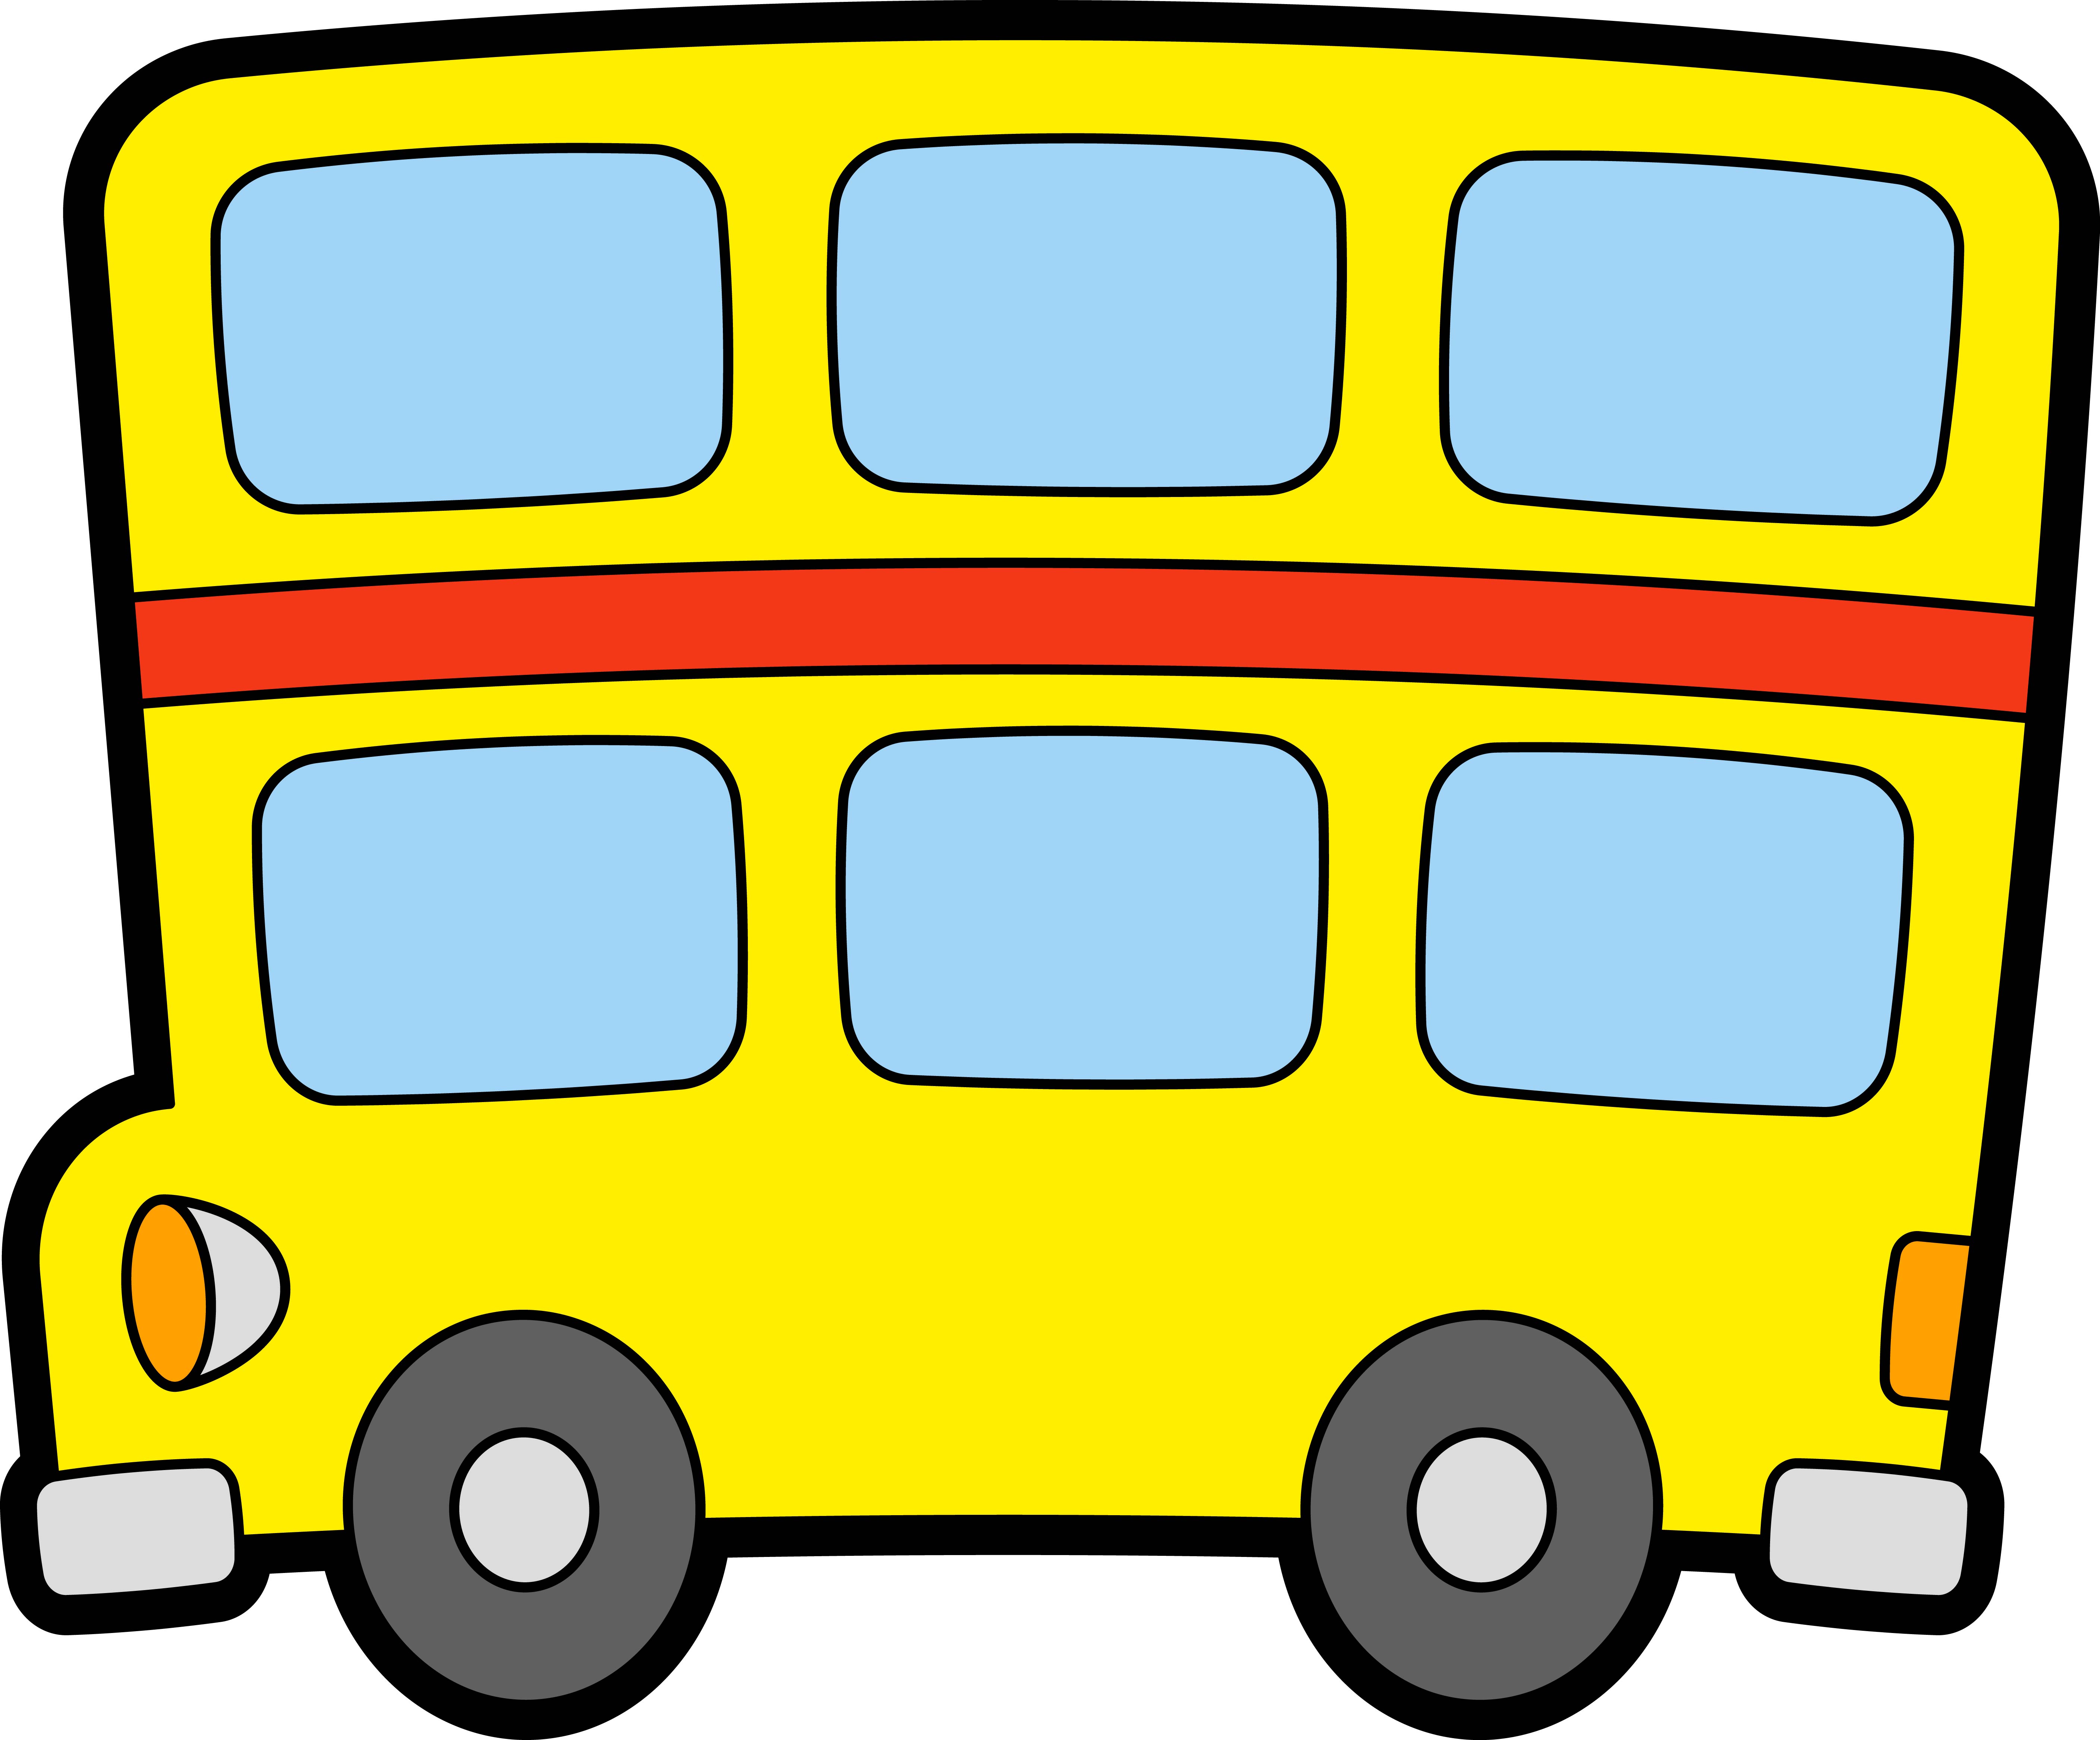 Раскраска мультяшный Лондонский автобус двухэтажный формата А4 в высоком качестве